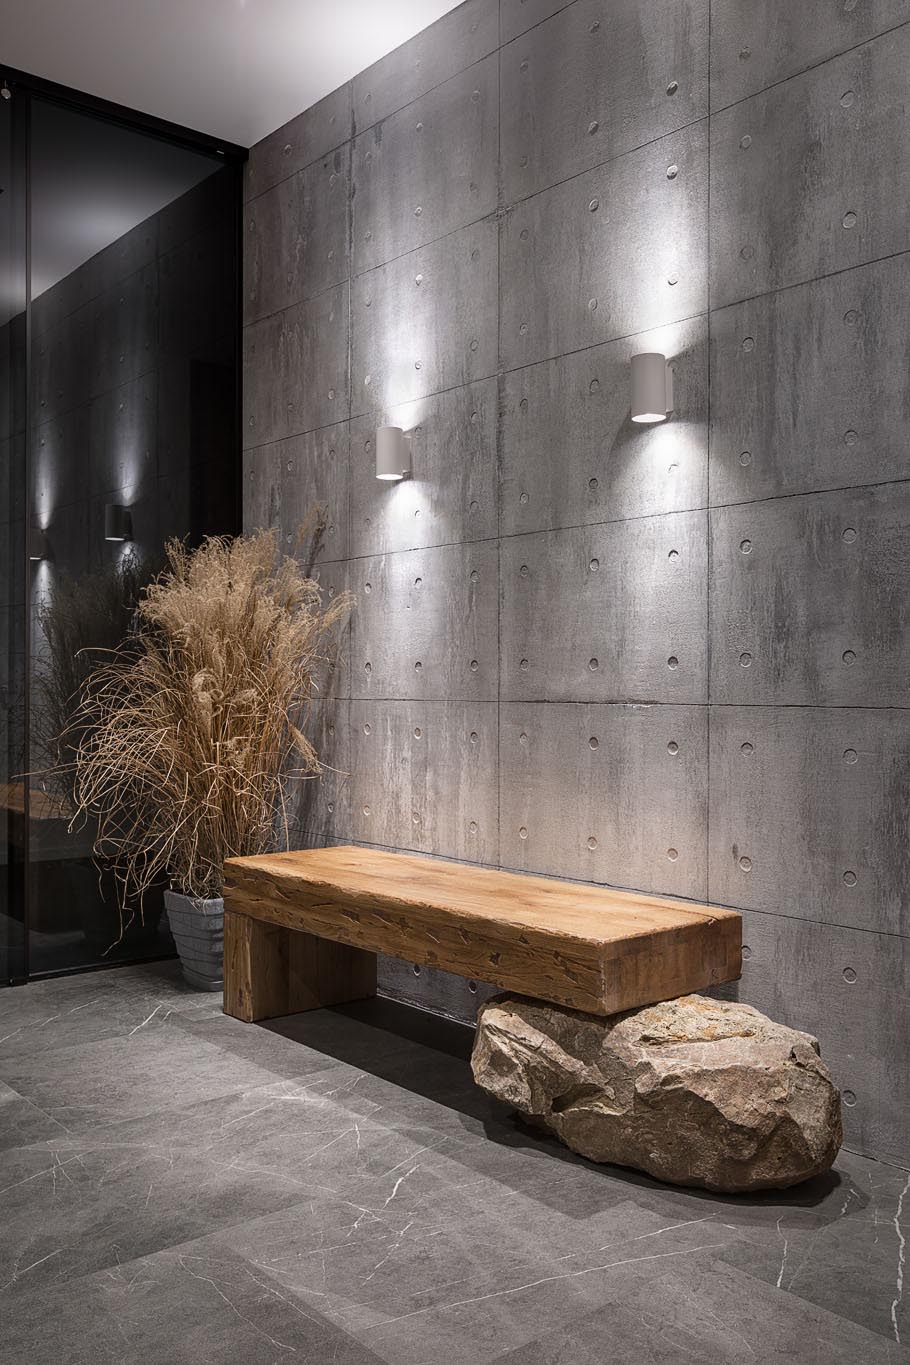 Lối vào hiện đại này có một bức tường bê tông lộ ra được làm nổi bật bởi hai chiếc bánh nướng trên tường và có một băng ghế gỗ dựa trên một tảng đá.